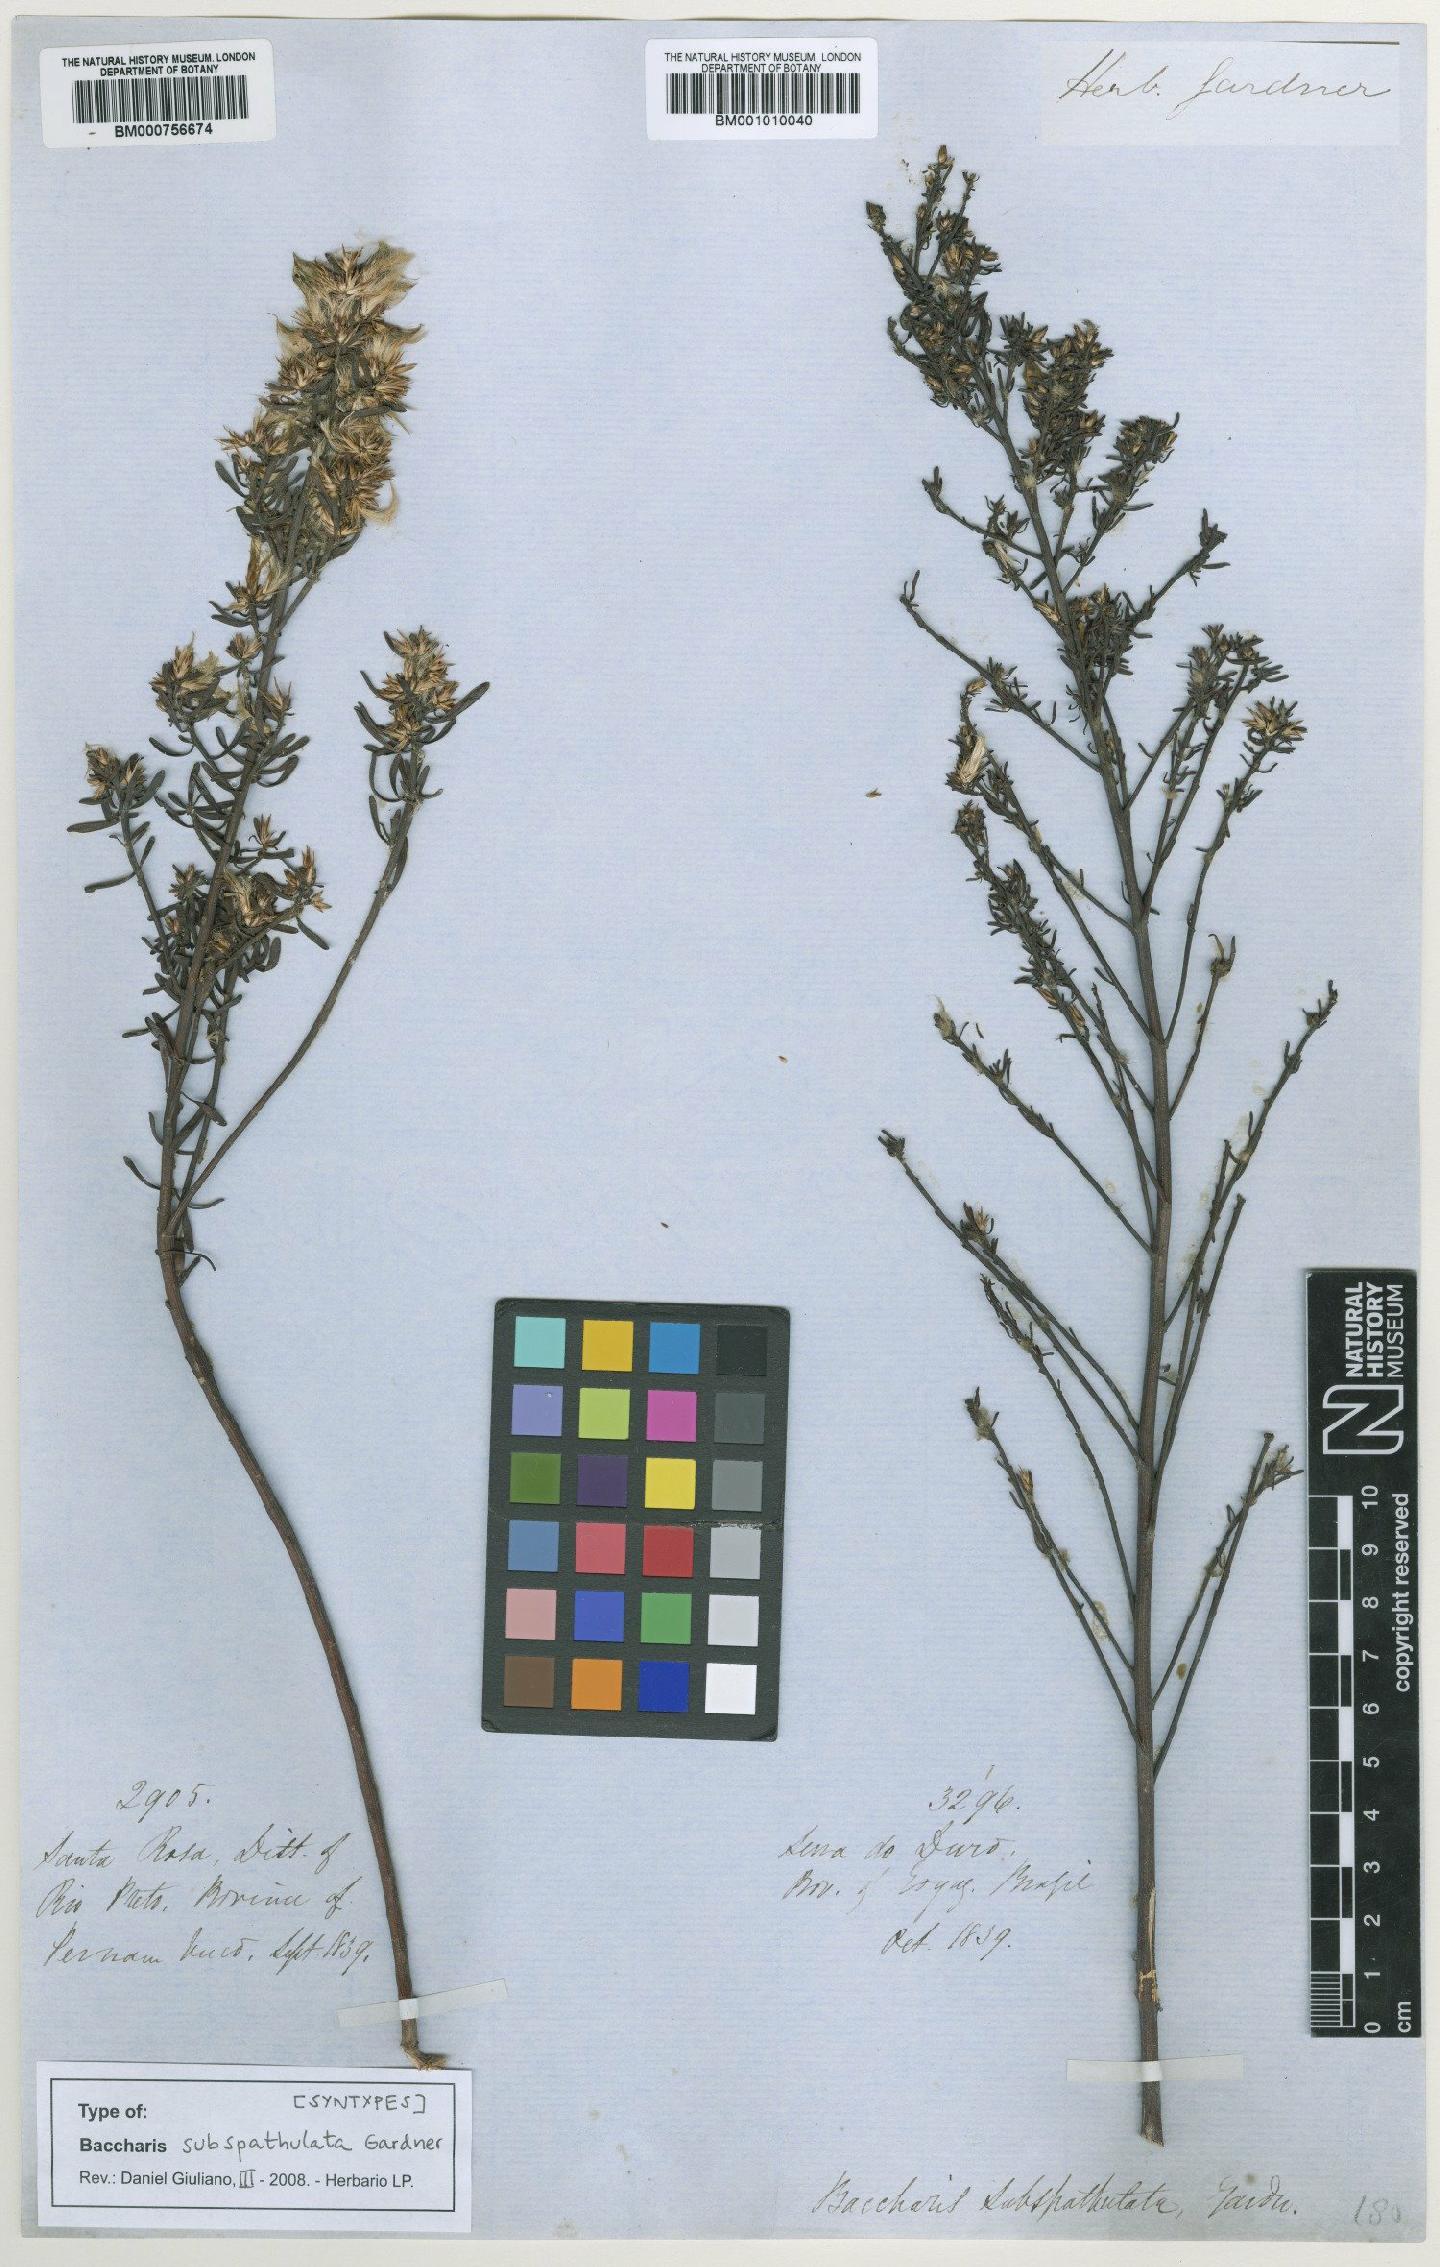 To NHMUK collection (Baccharis subspathulata Gardner; Syntype; NHMUK:ecatalogue:464641)